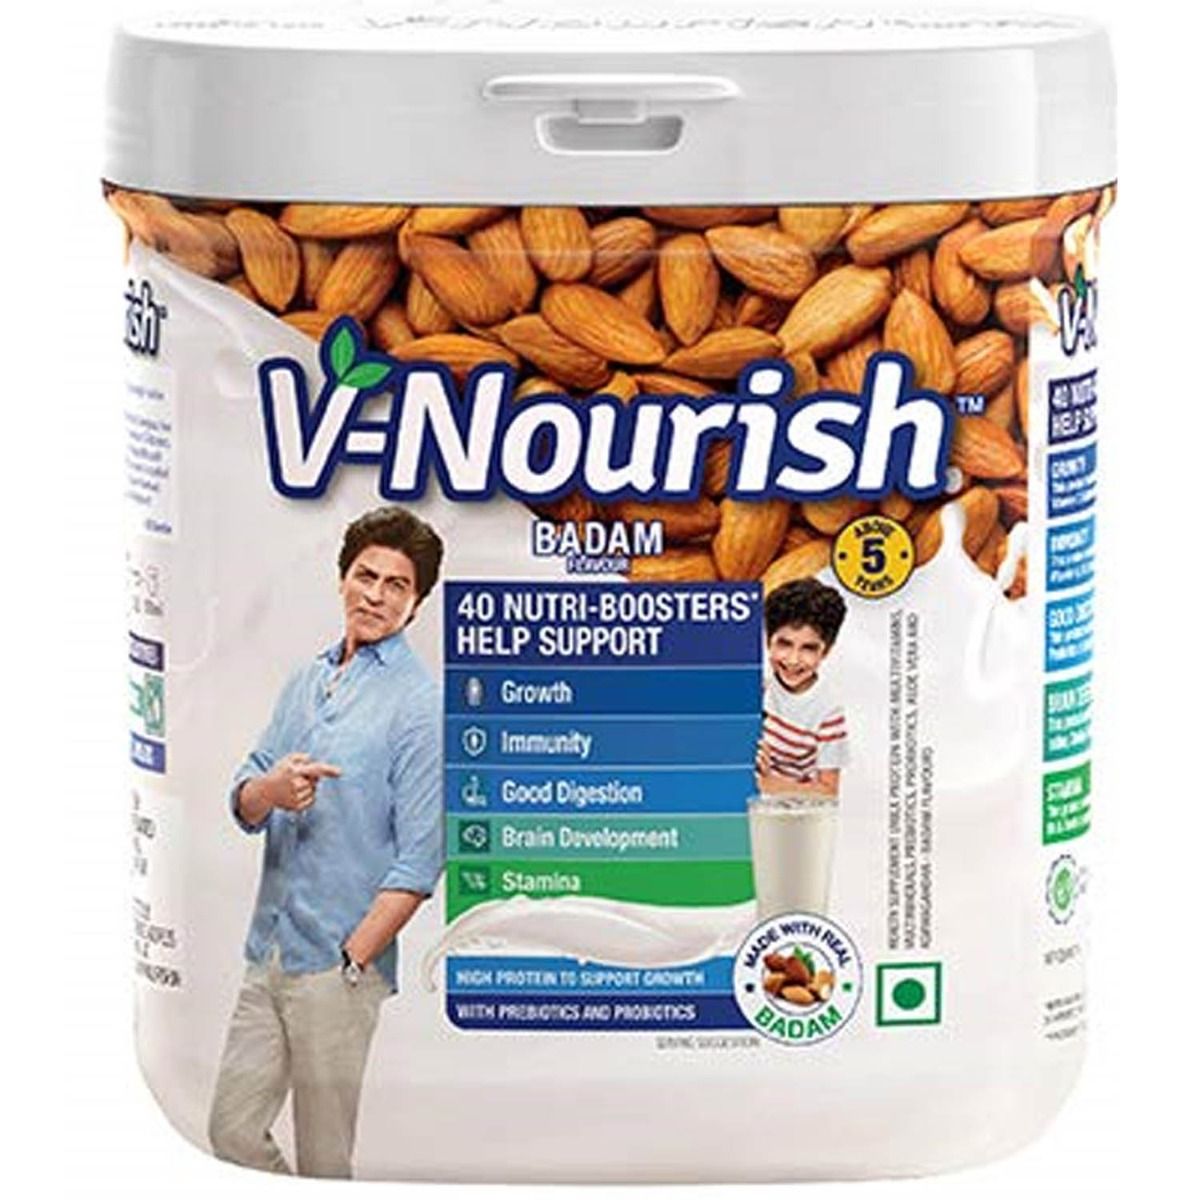 Buy V-Nourish Badam Flavour Kids Nutrition Drink Powder, 200 gm Jar Online